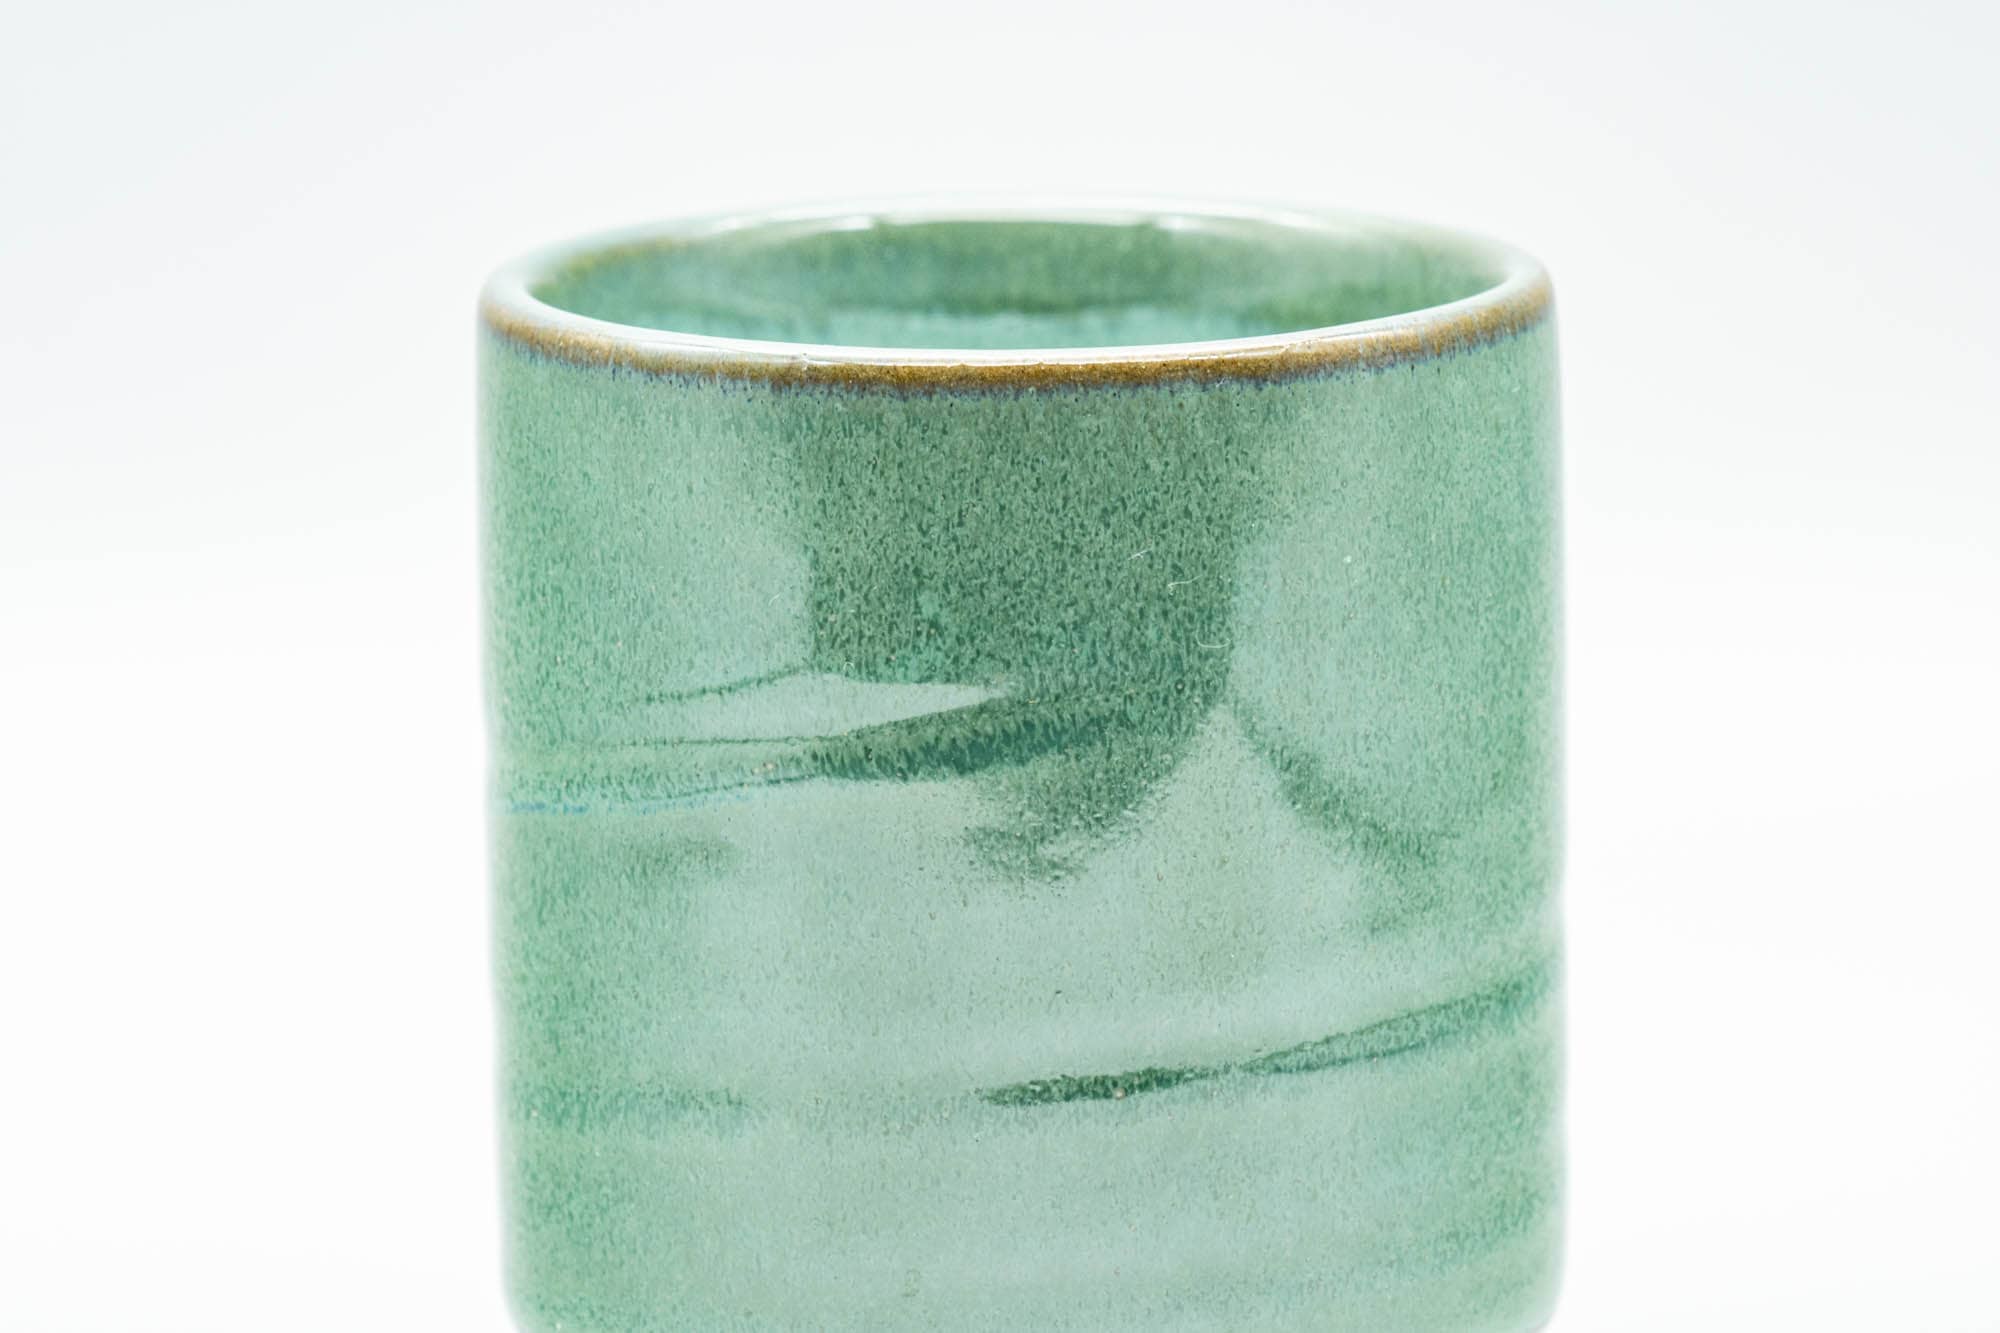 Japanese Teacups - Set of 4 Green Turquoise Tsutsu-gata Yunomi - 130ml